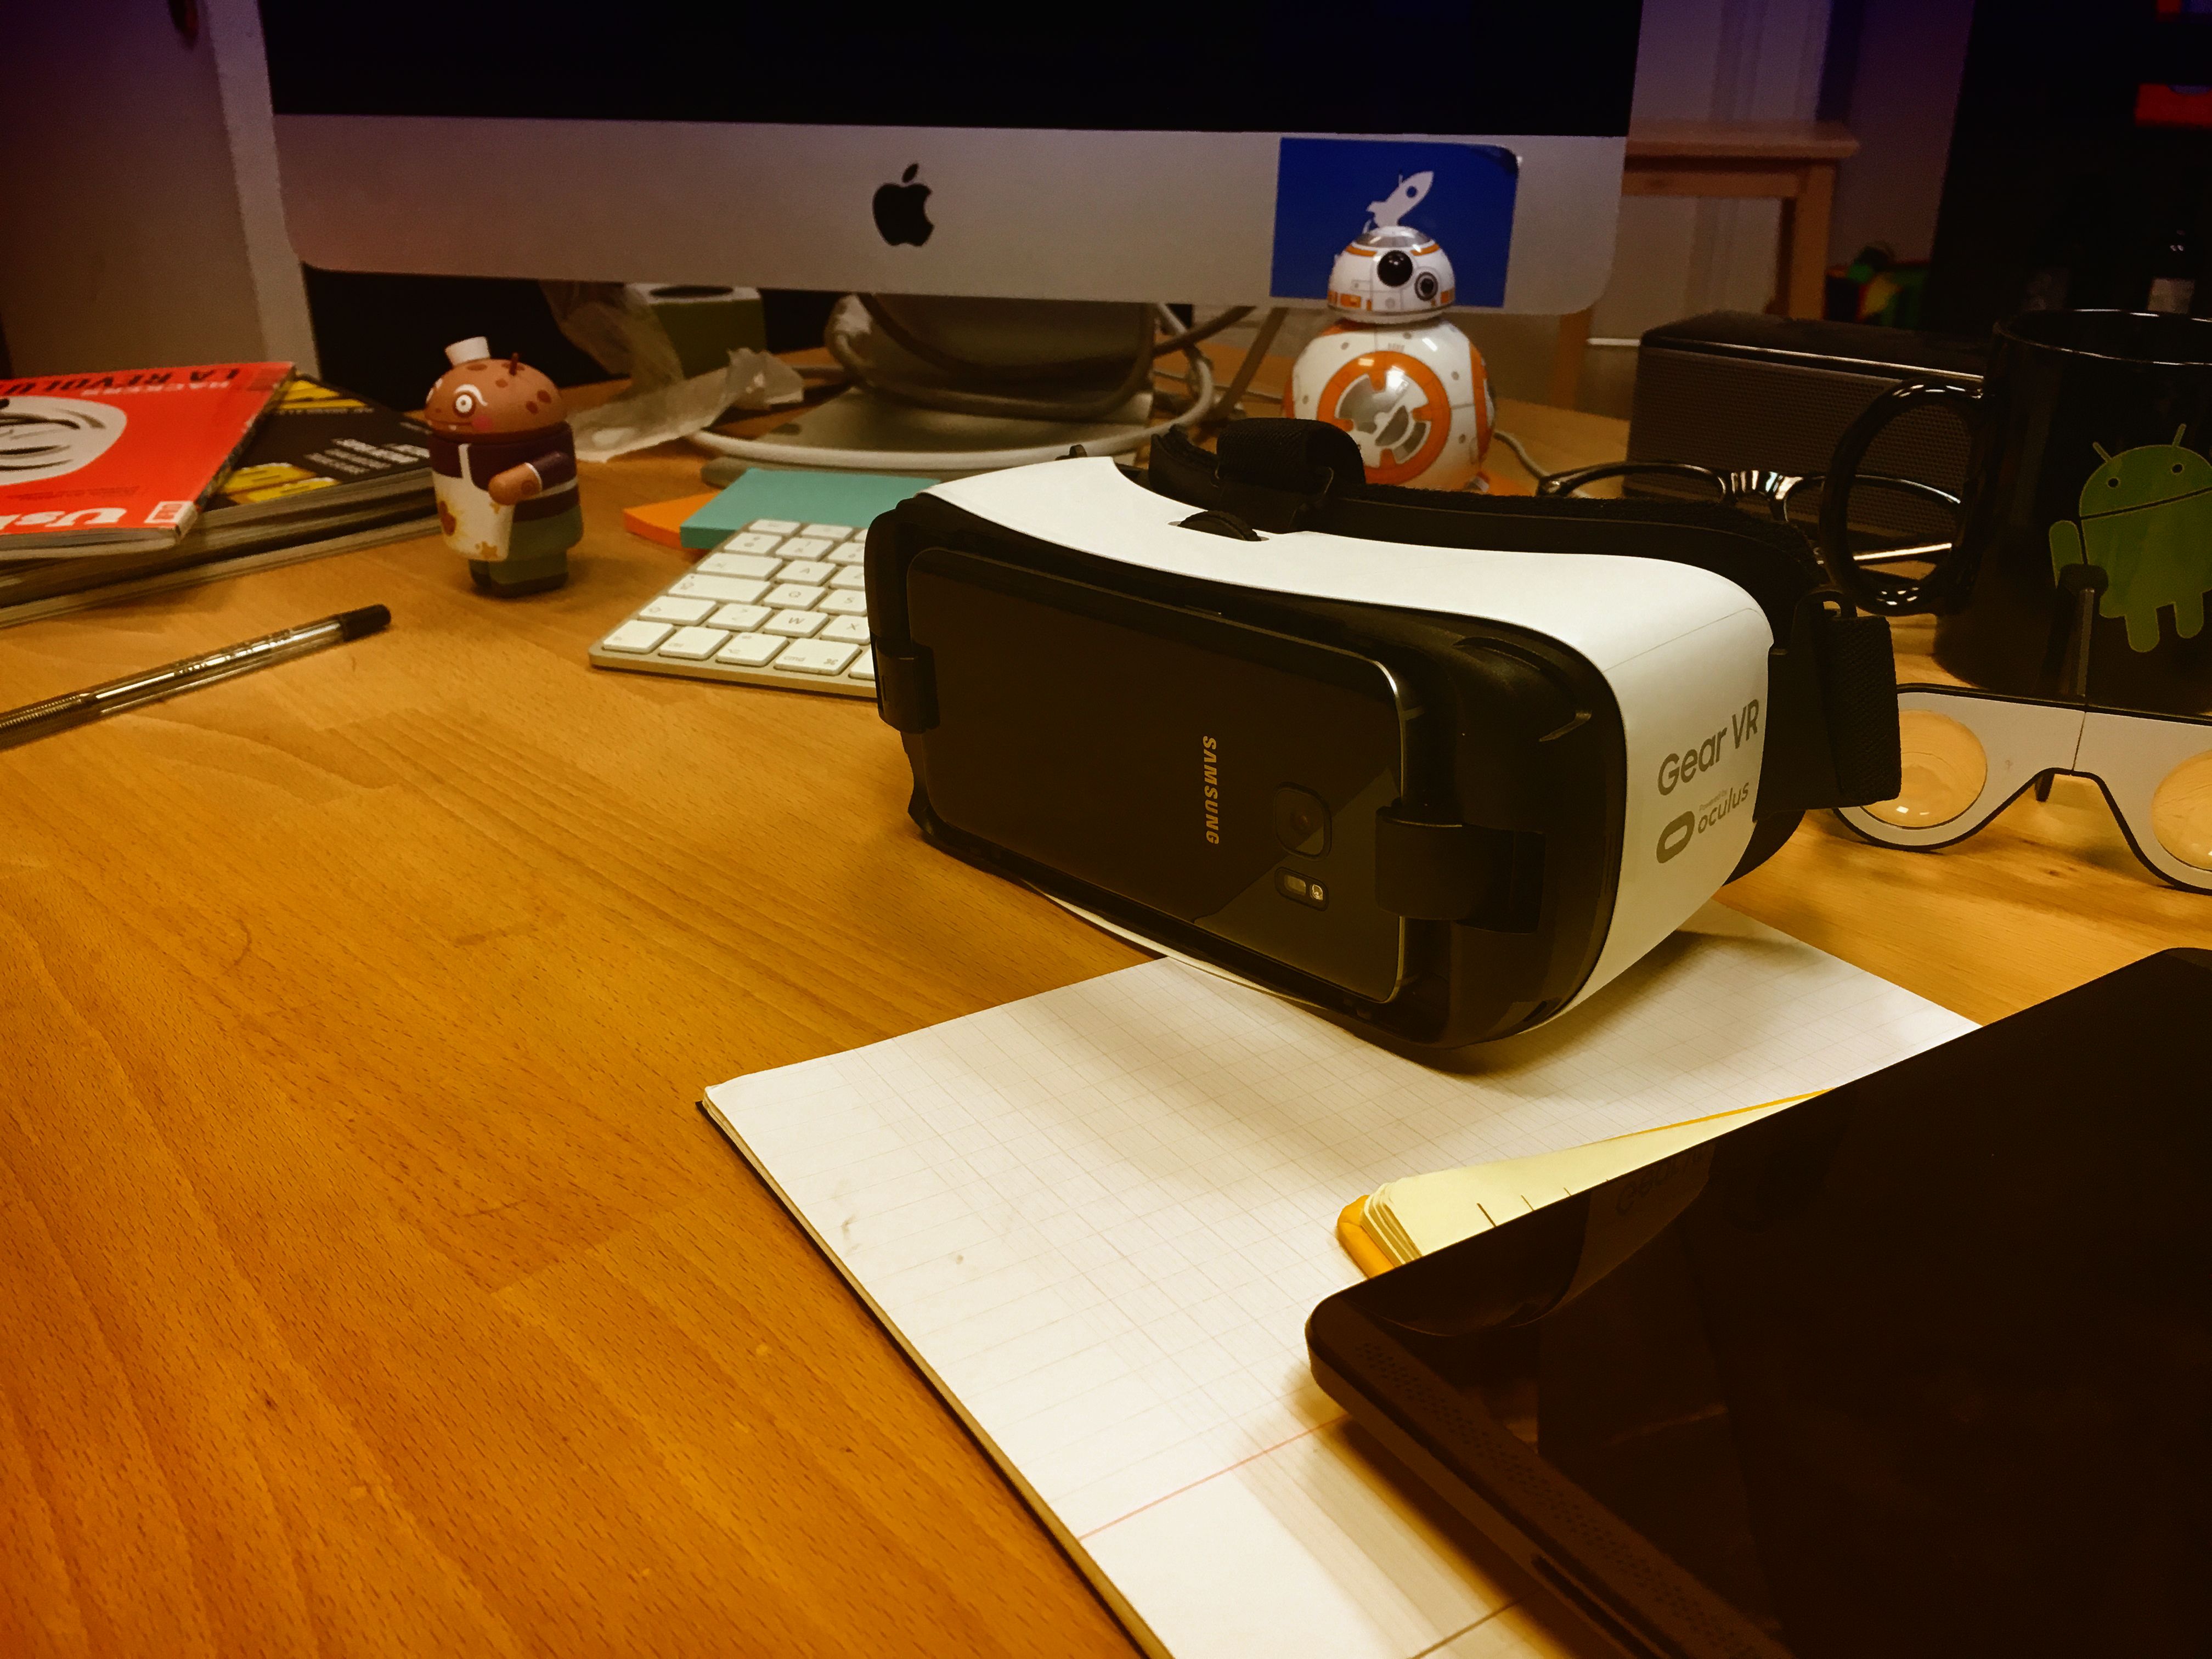 On a testé pour vous : le Gear VR, casque de réalité virtuelle de Samsung